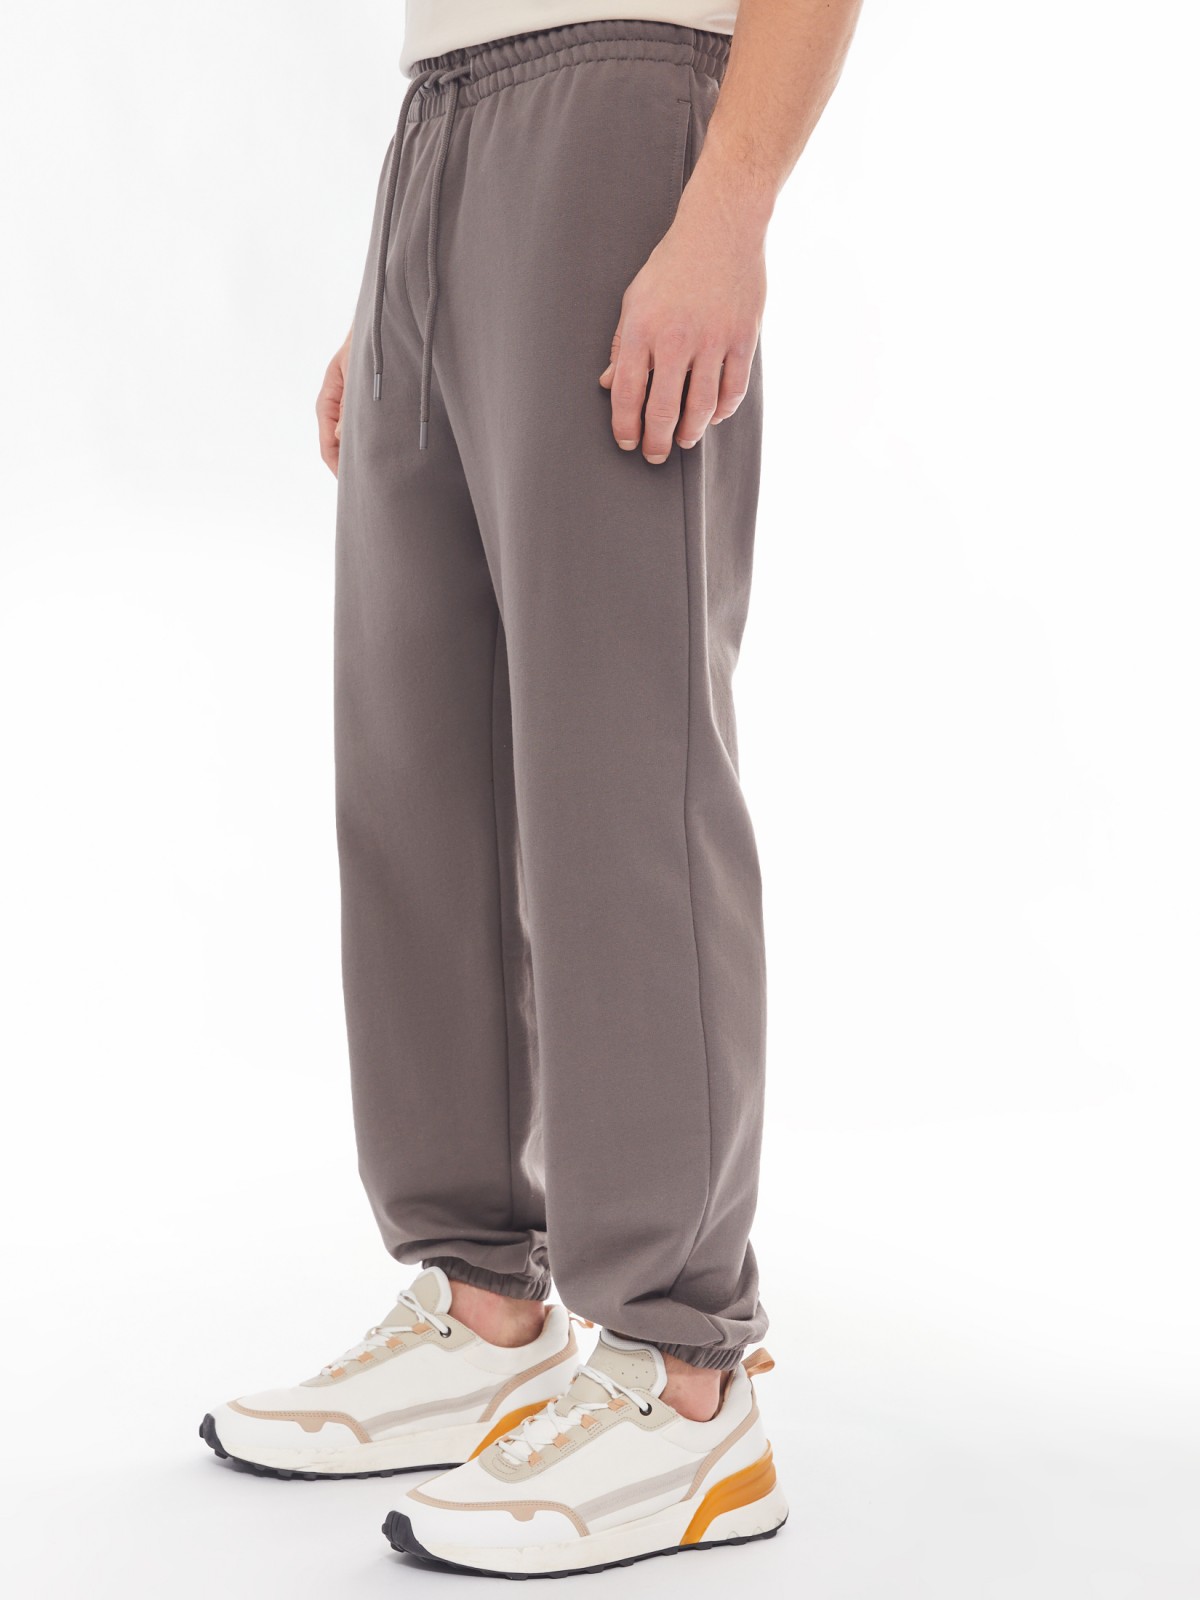 Трикотажные брюки-джоггеры в спортивном стиле zolla 014137660042, цвет серый, размер S - фото 5